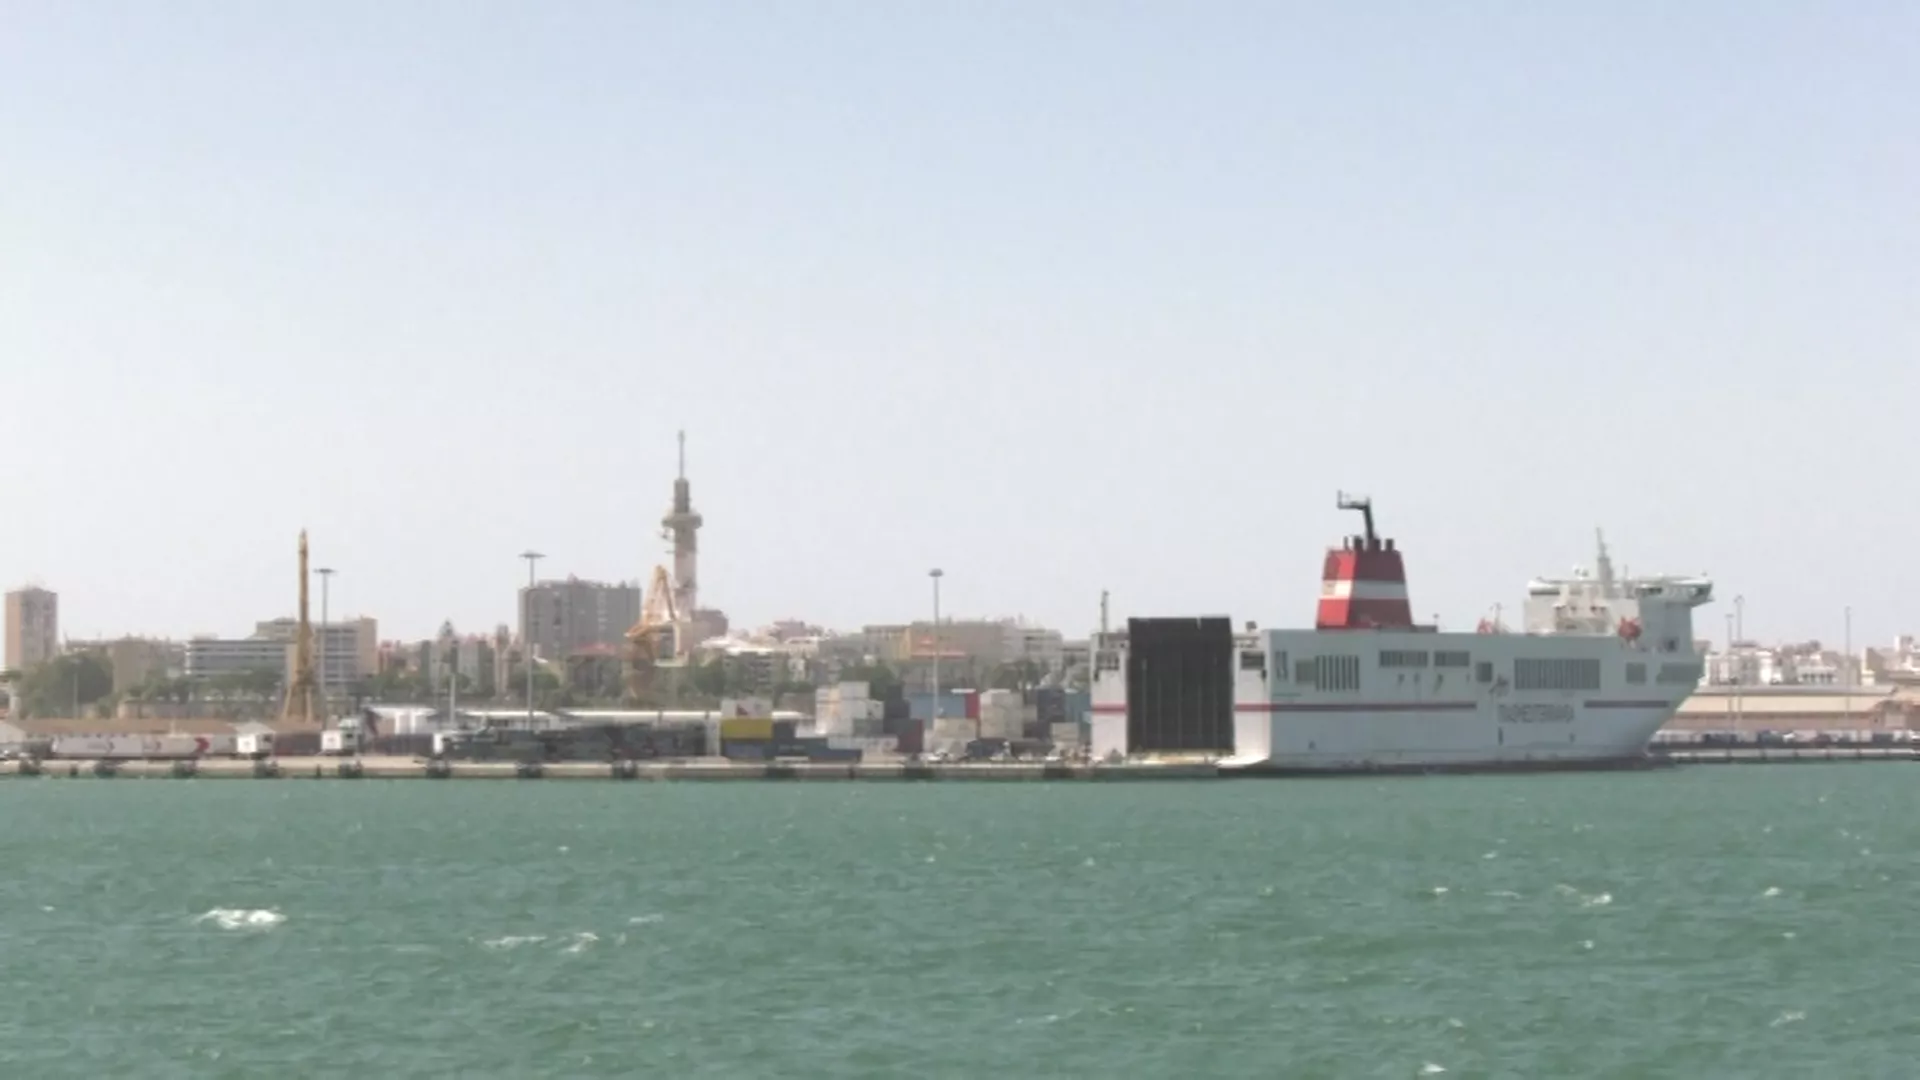 Incautados 2.100 kilos de hachís en un contenedor en el puerto de Cádiz